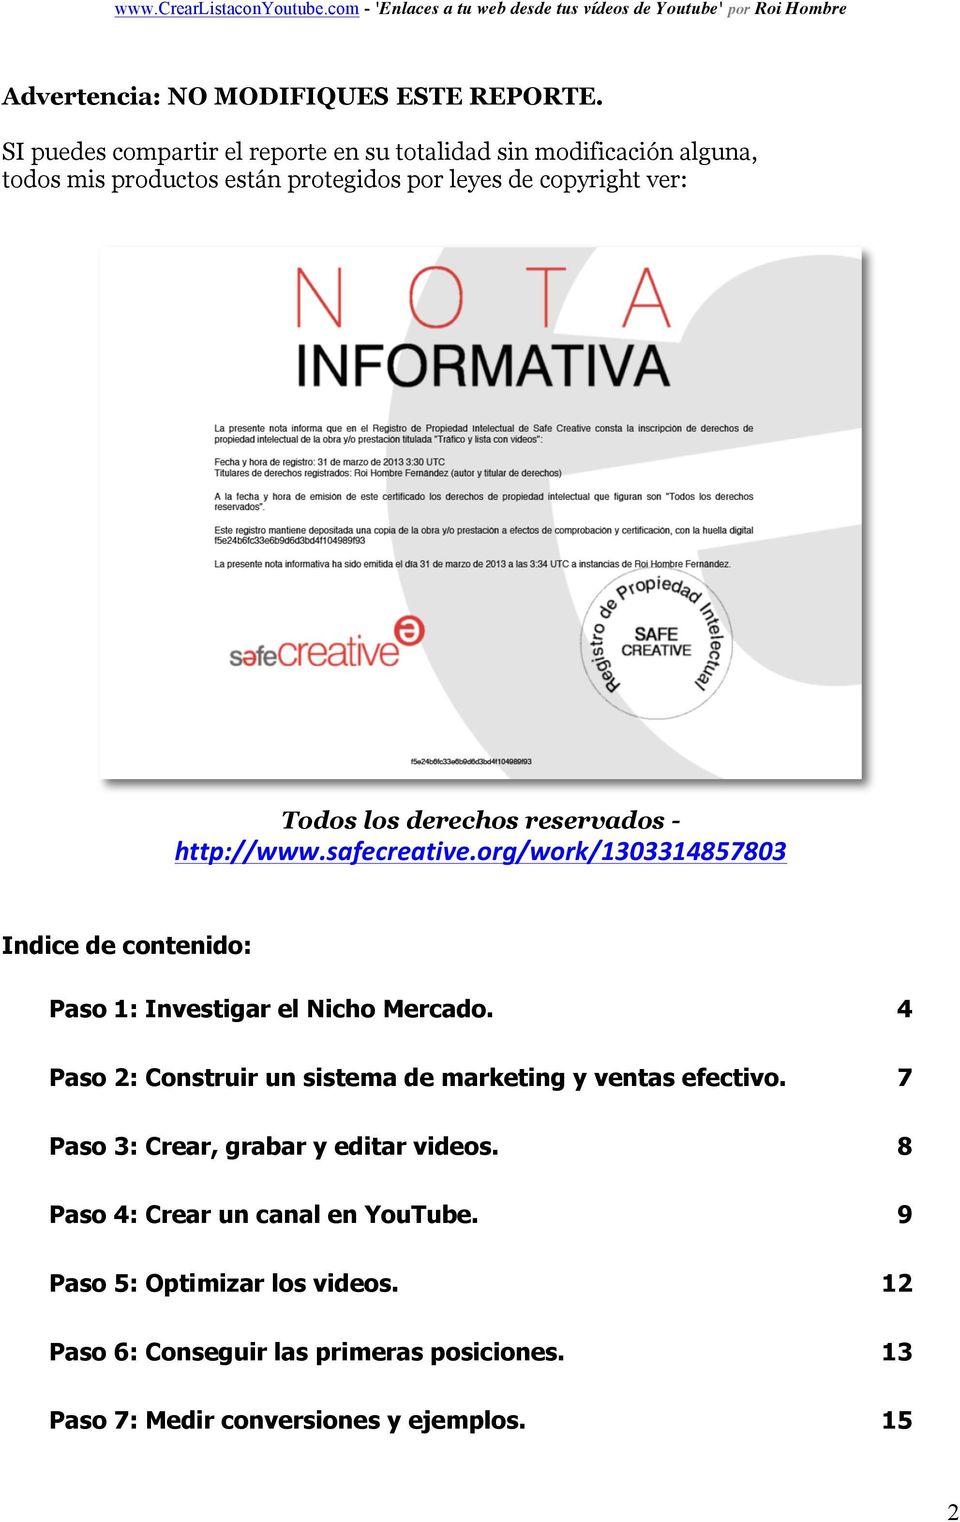 derechos reservados - http://www.safecreative.org/work/1303314857803 Indice de contenido: Paso 1: Investigar el Nicho Mercado.